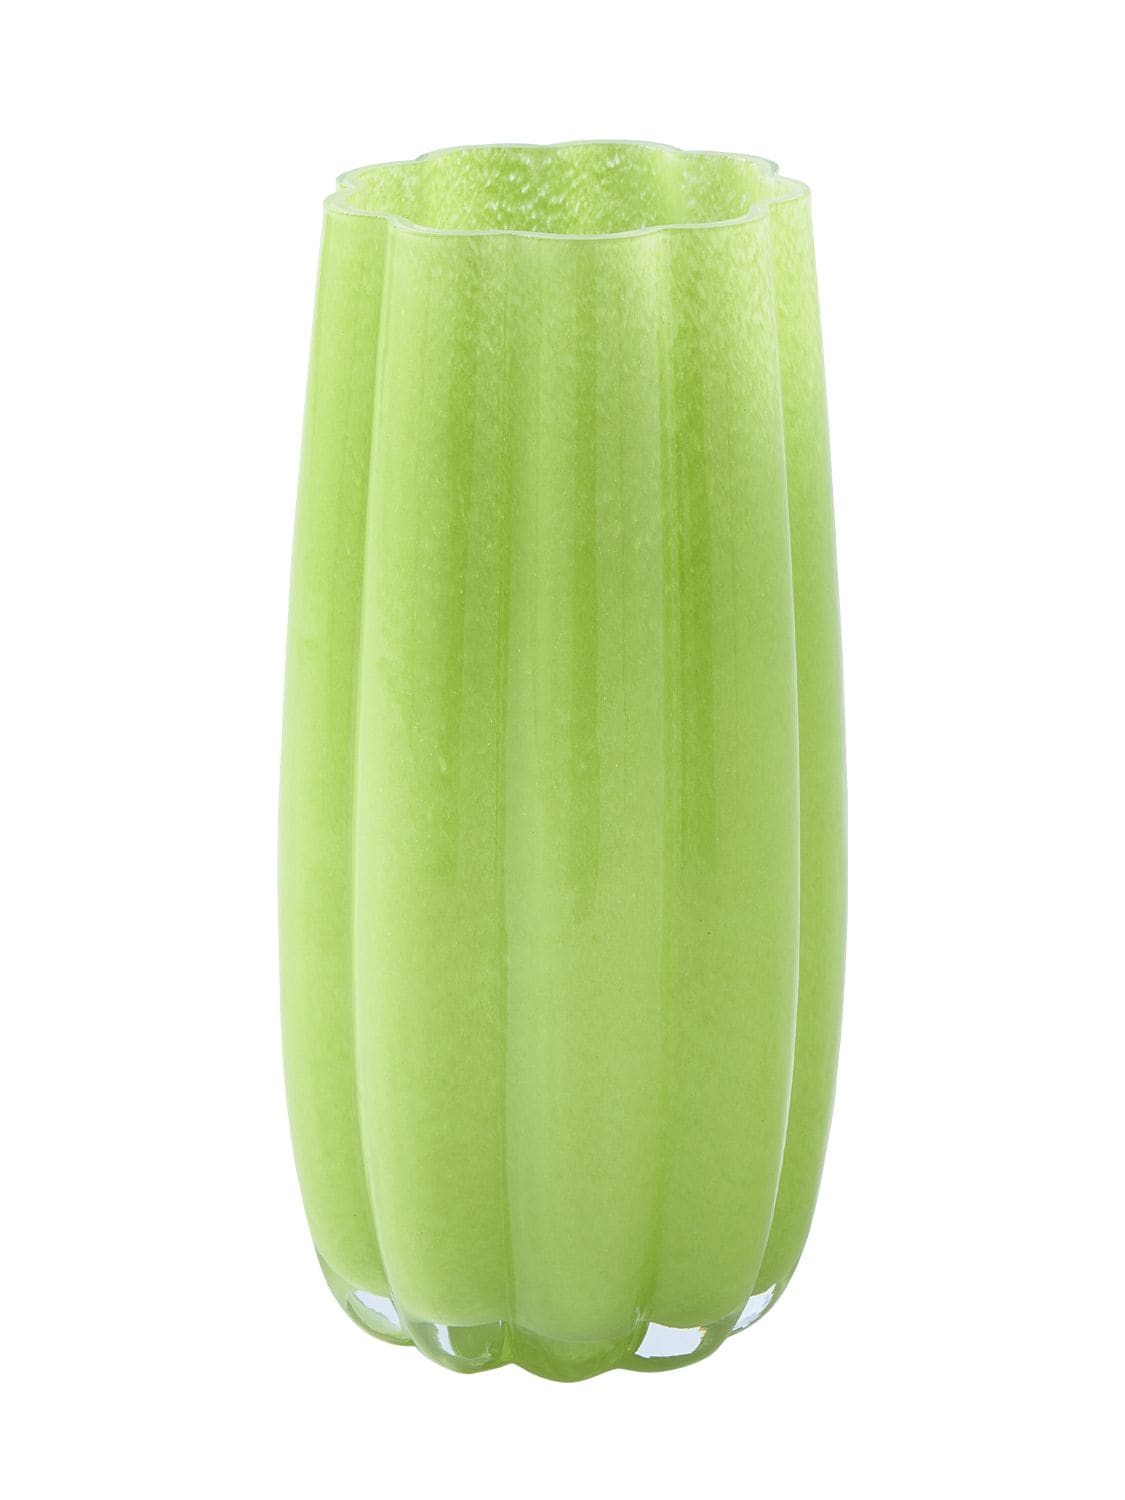 Polspotten Medium Melon Glass Vase In Green